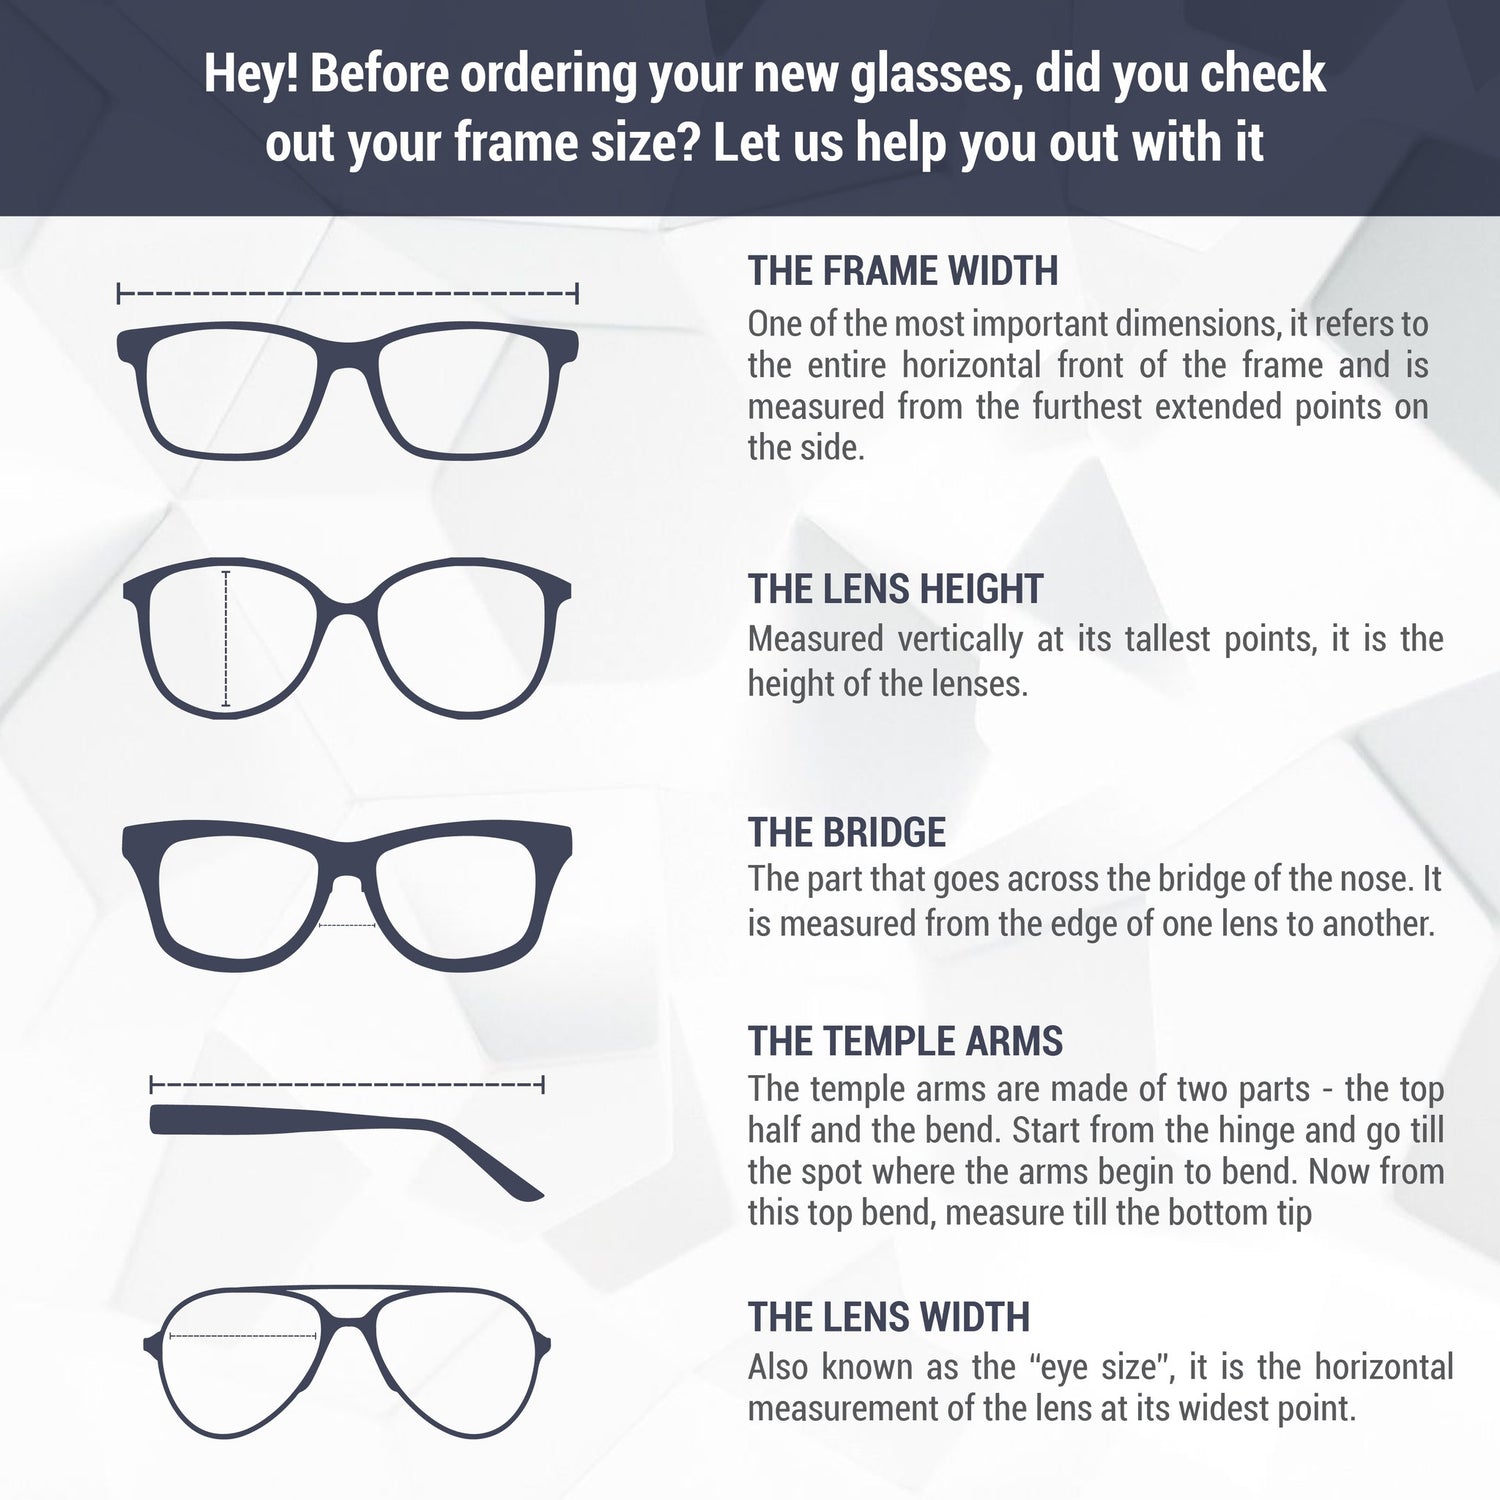 Montatura per occhiali Moschino | Modello MOS501